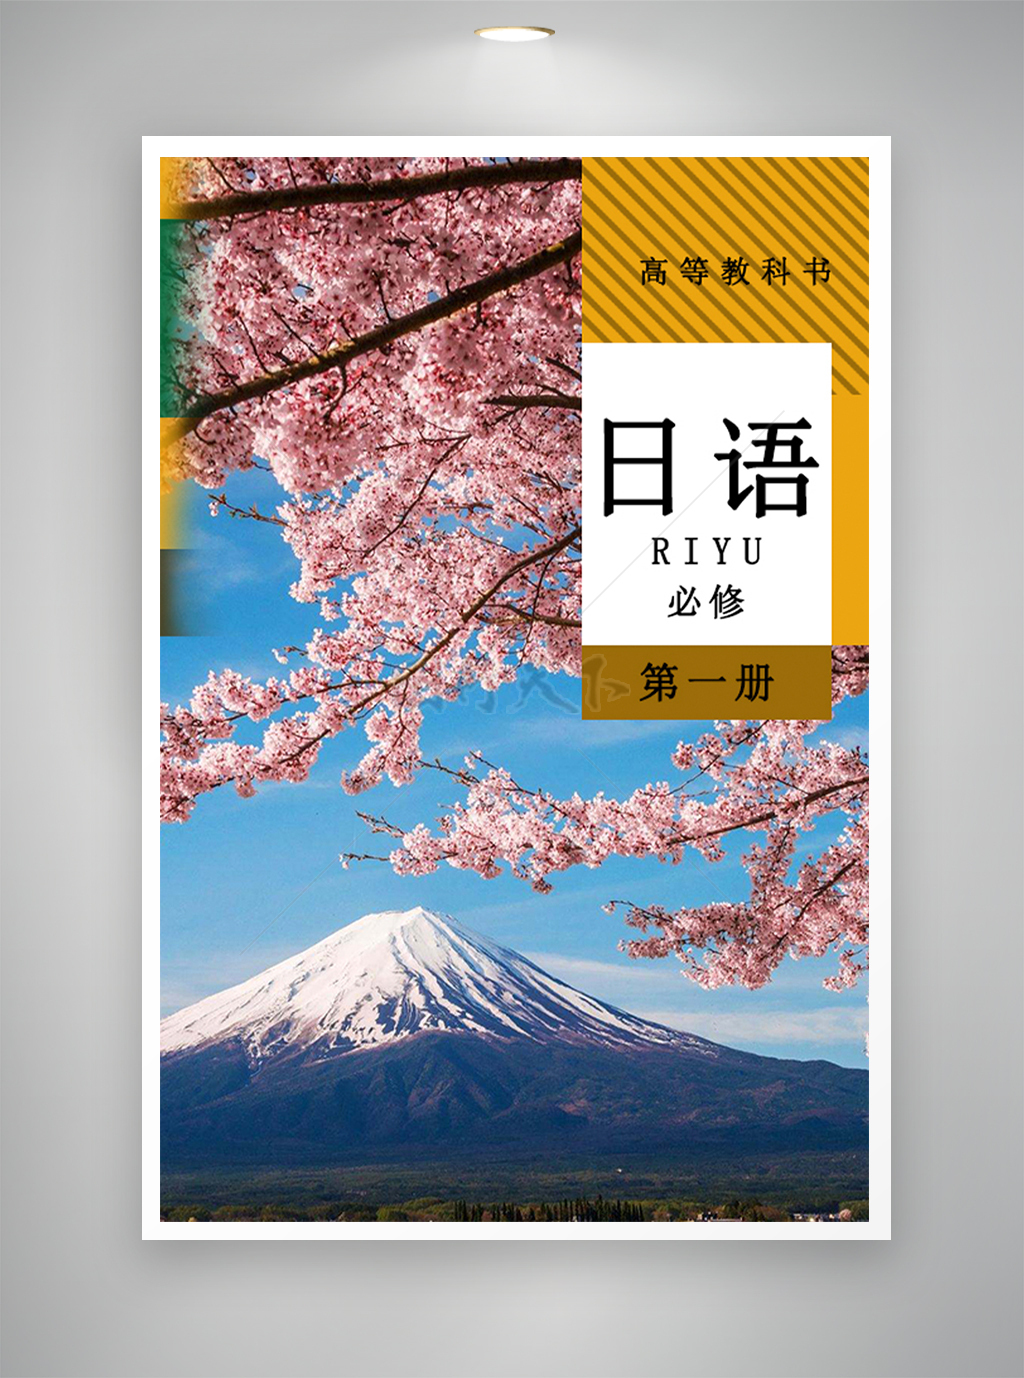 日语书籍封面